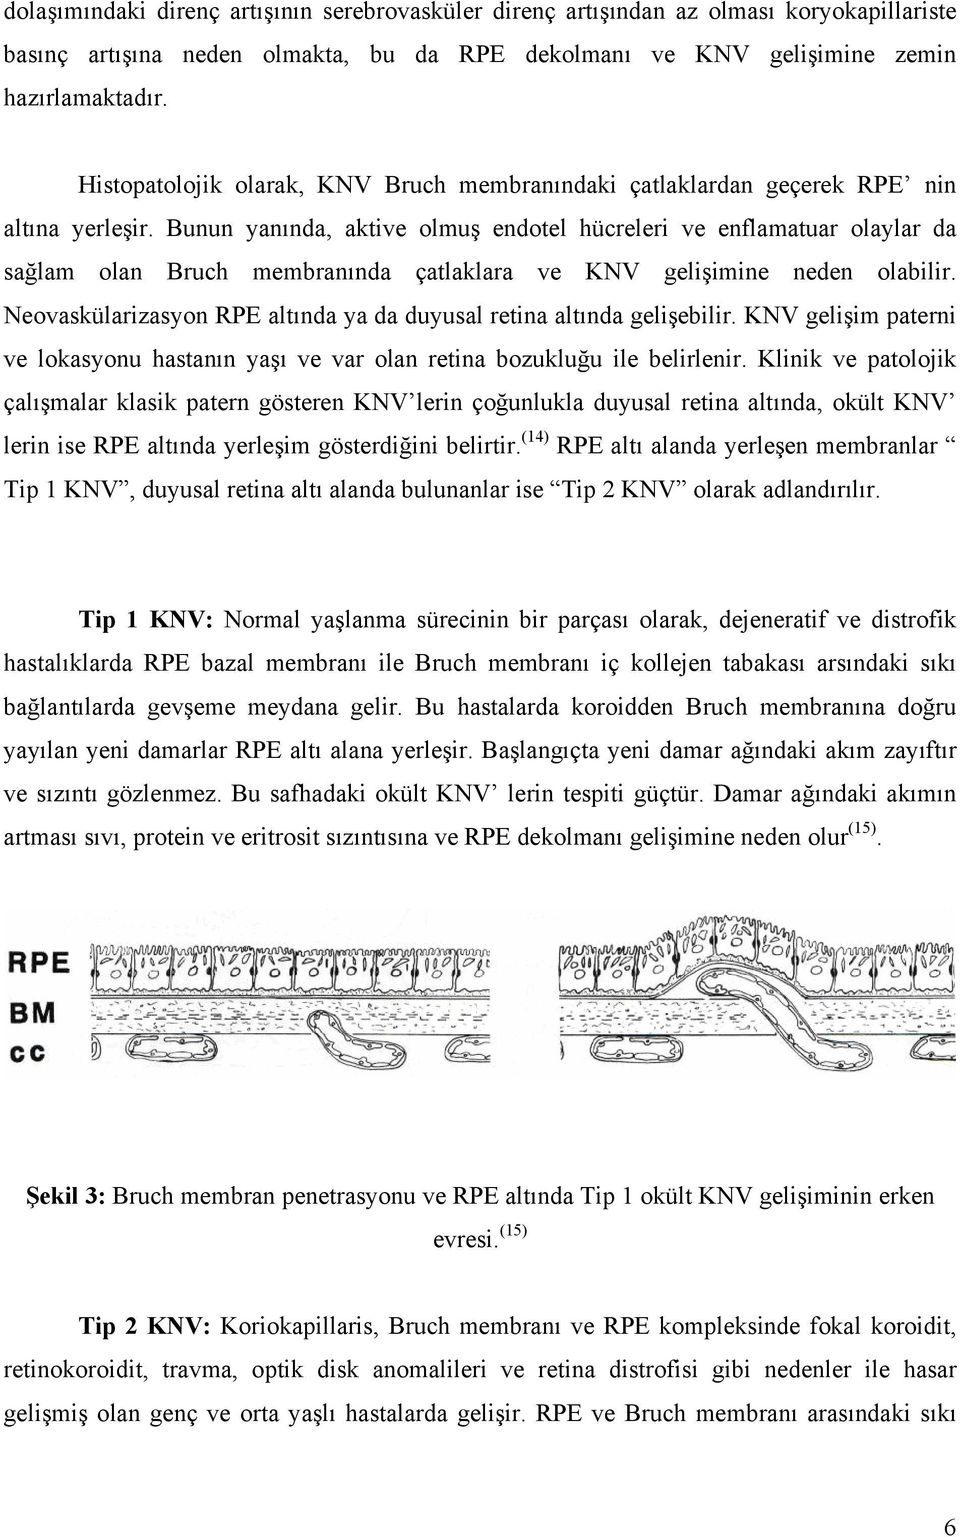 Bunun yanında, aktive olmuş endotel hücreleri ve enflamatuar olaylar da sağlam olan Bruch membranında çatlaklara ve KNV gelişimine neden olabilir.